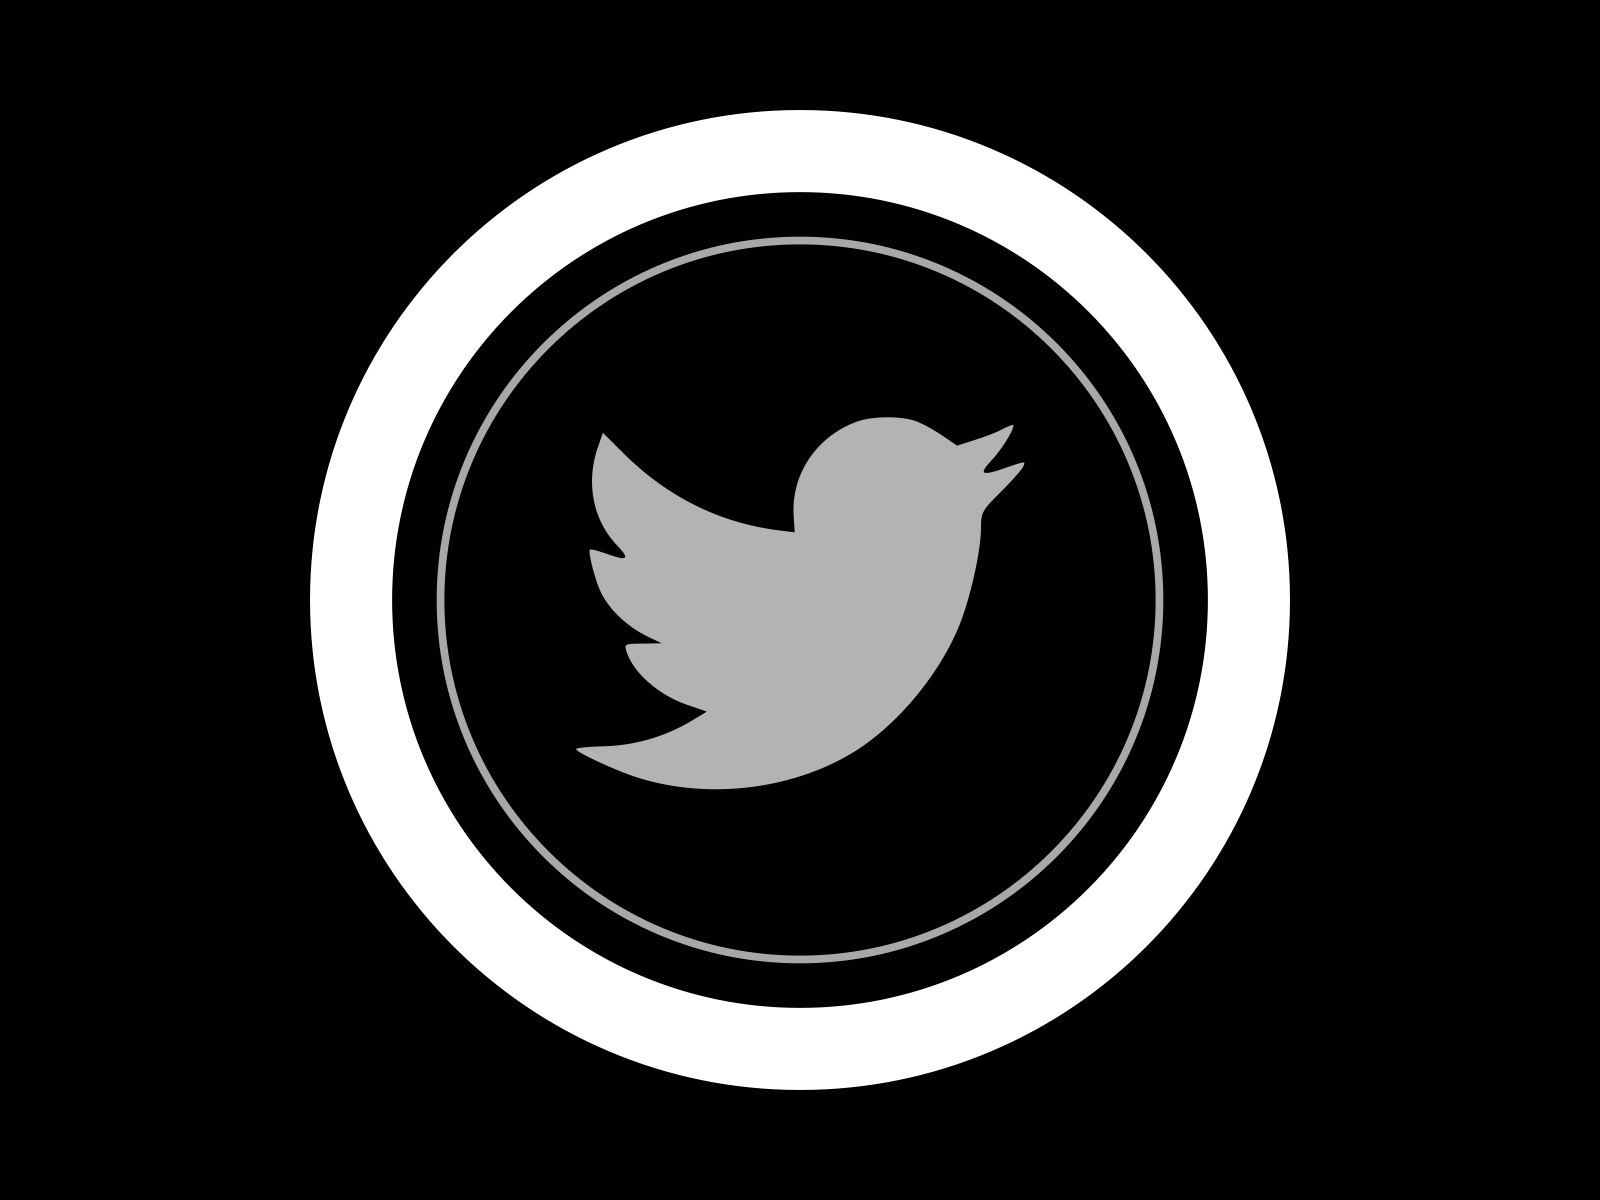 Twitter Round Black Icon Design Inspiration